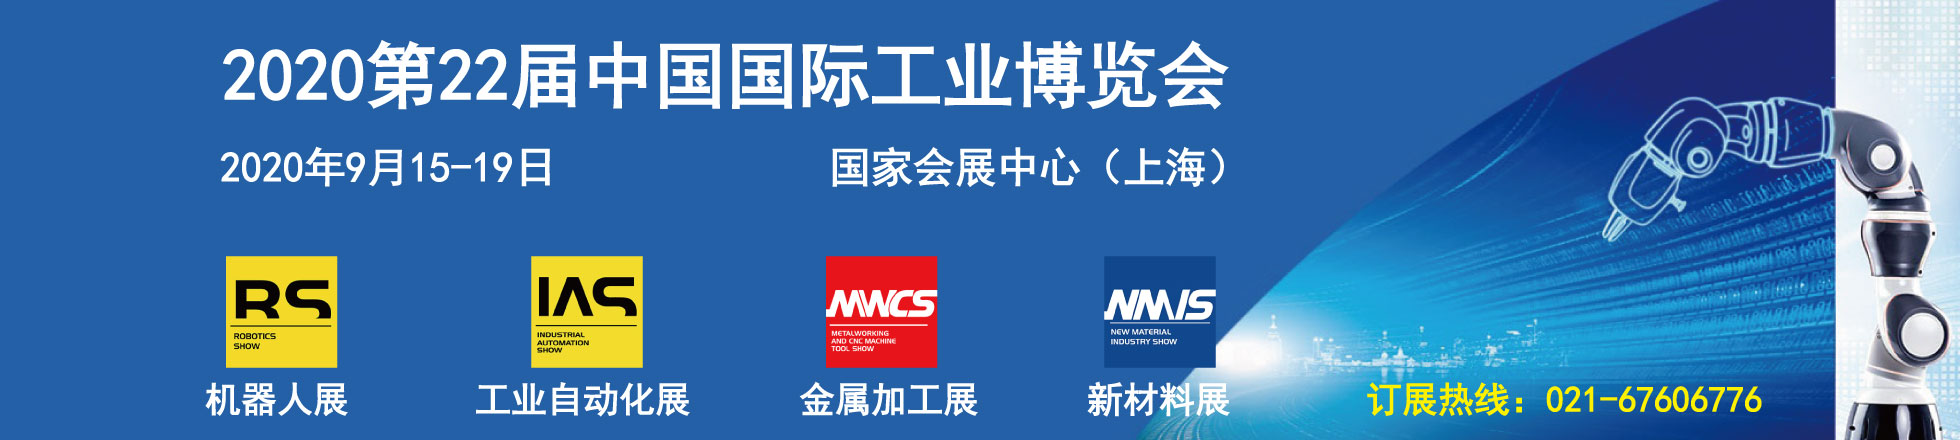 中国NMIS展橡塑材料展区